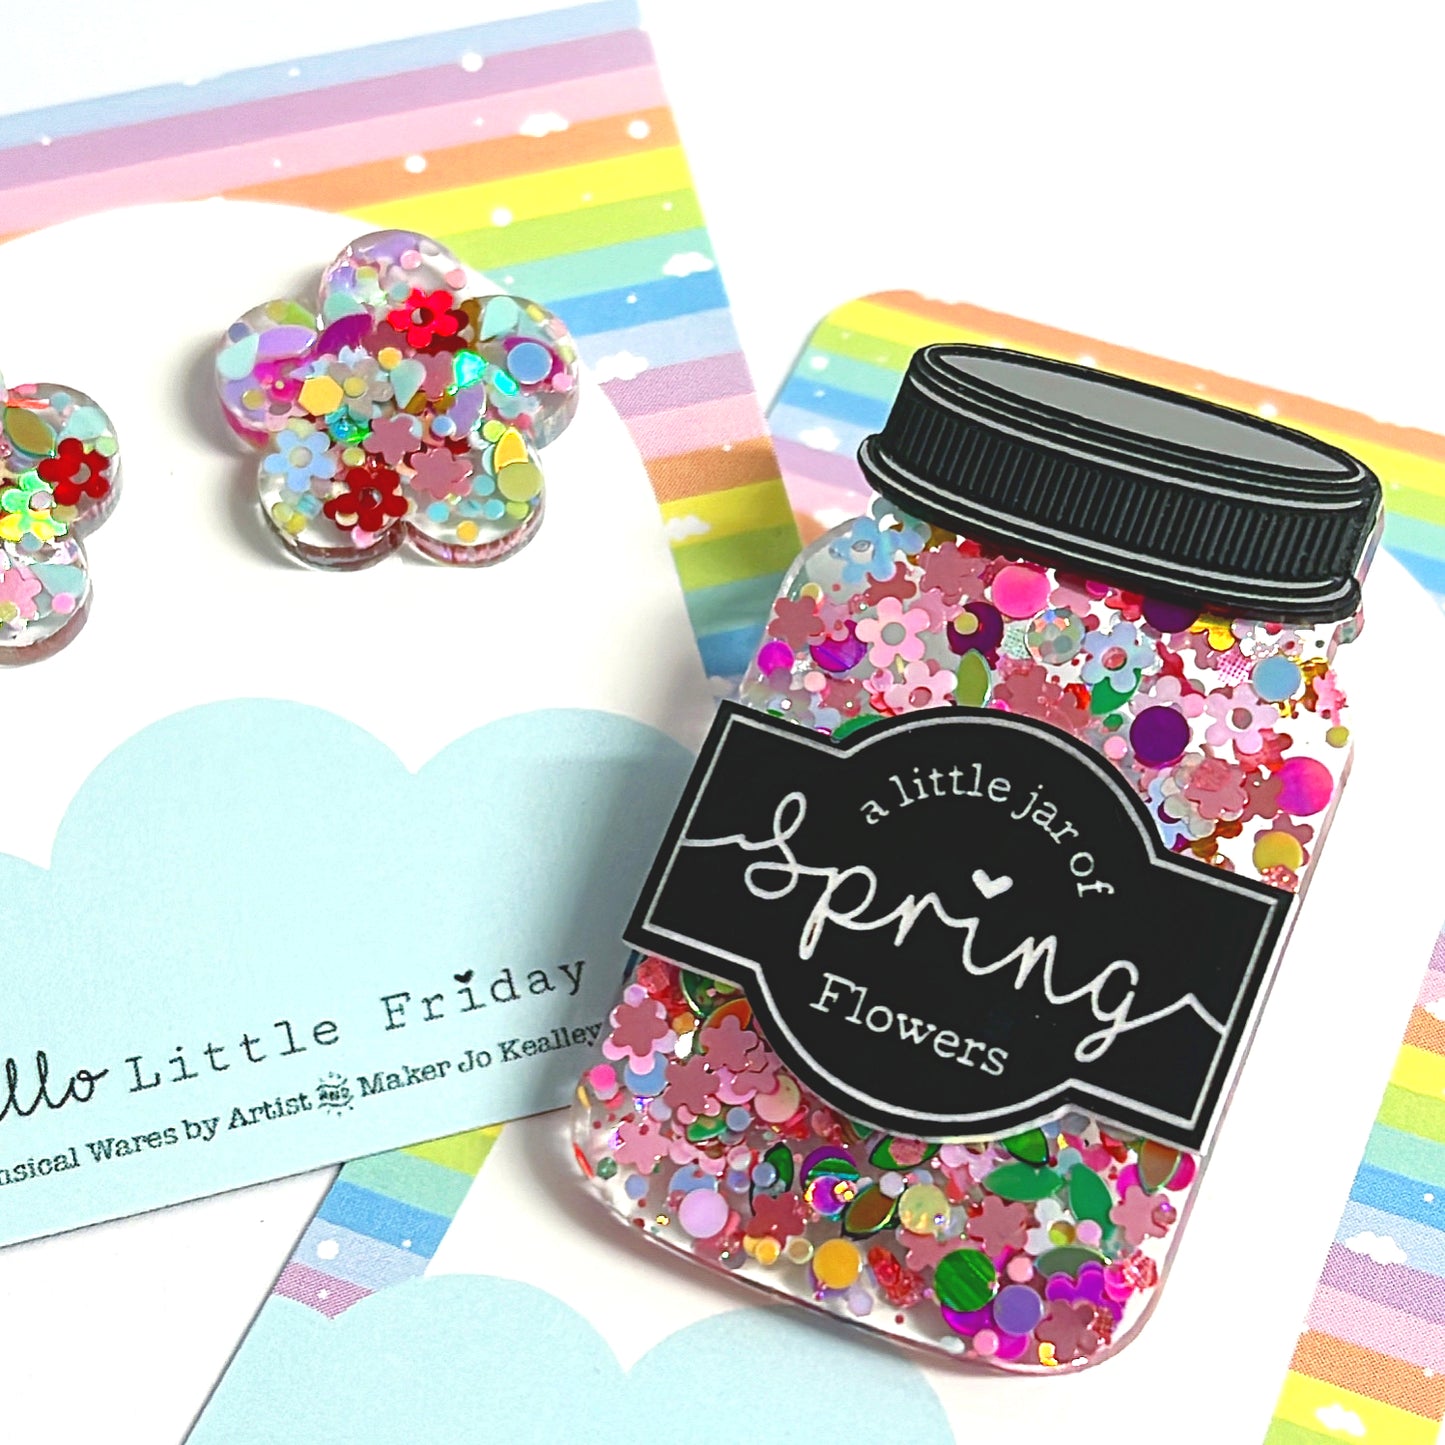 A LITTLE JAR OF SPRING FLOWERS : Handmade Resin & Acrylic BROOCH or STUD Earrings